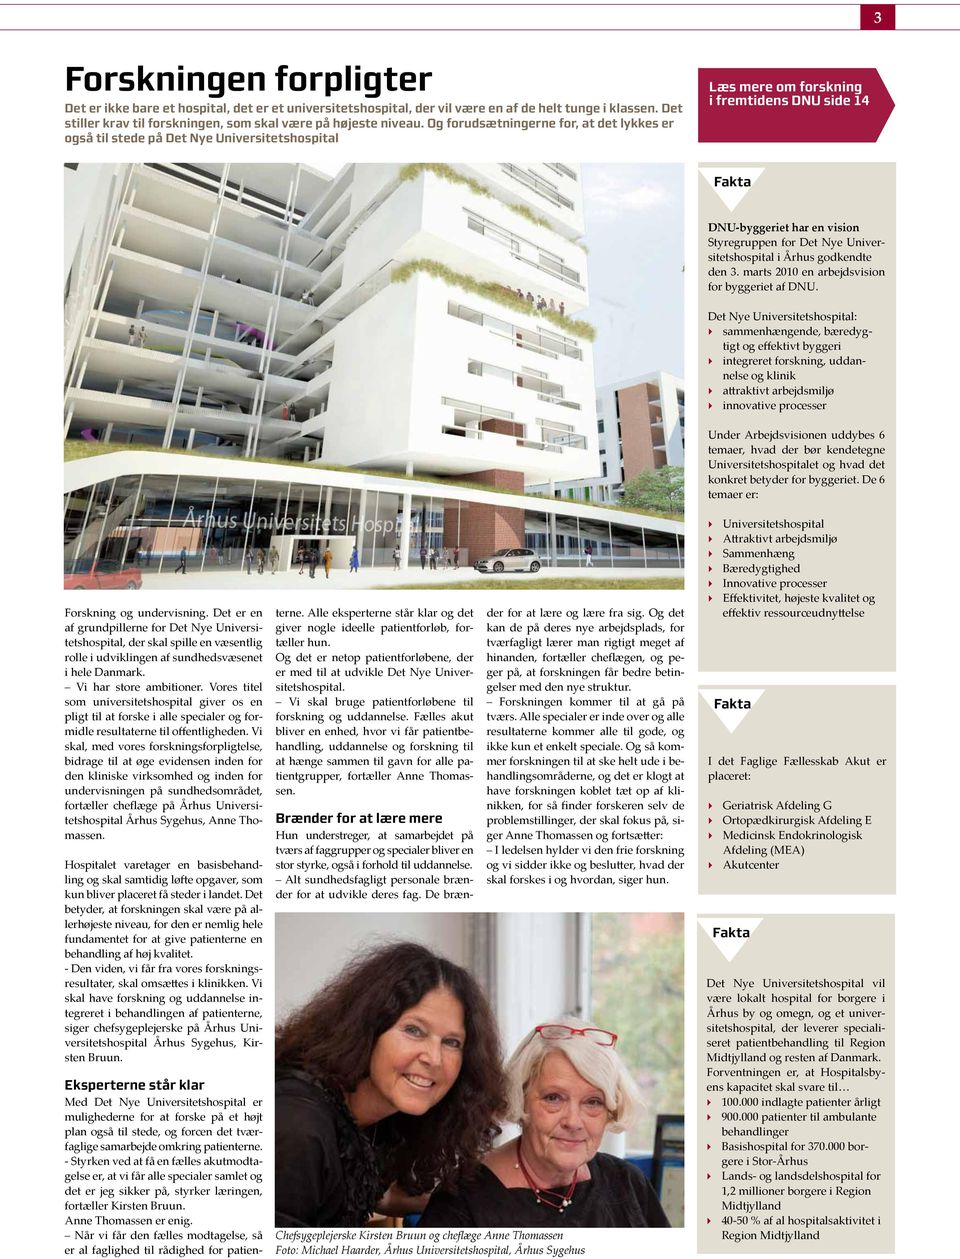 Universitetshospital i Århus godkendte den 3. marts 2010 en arbejdsvision for byggeriet af DNU.